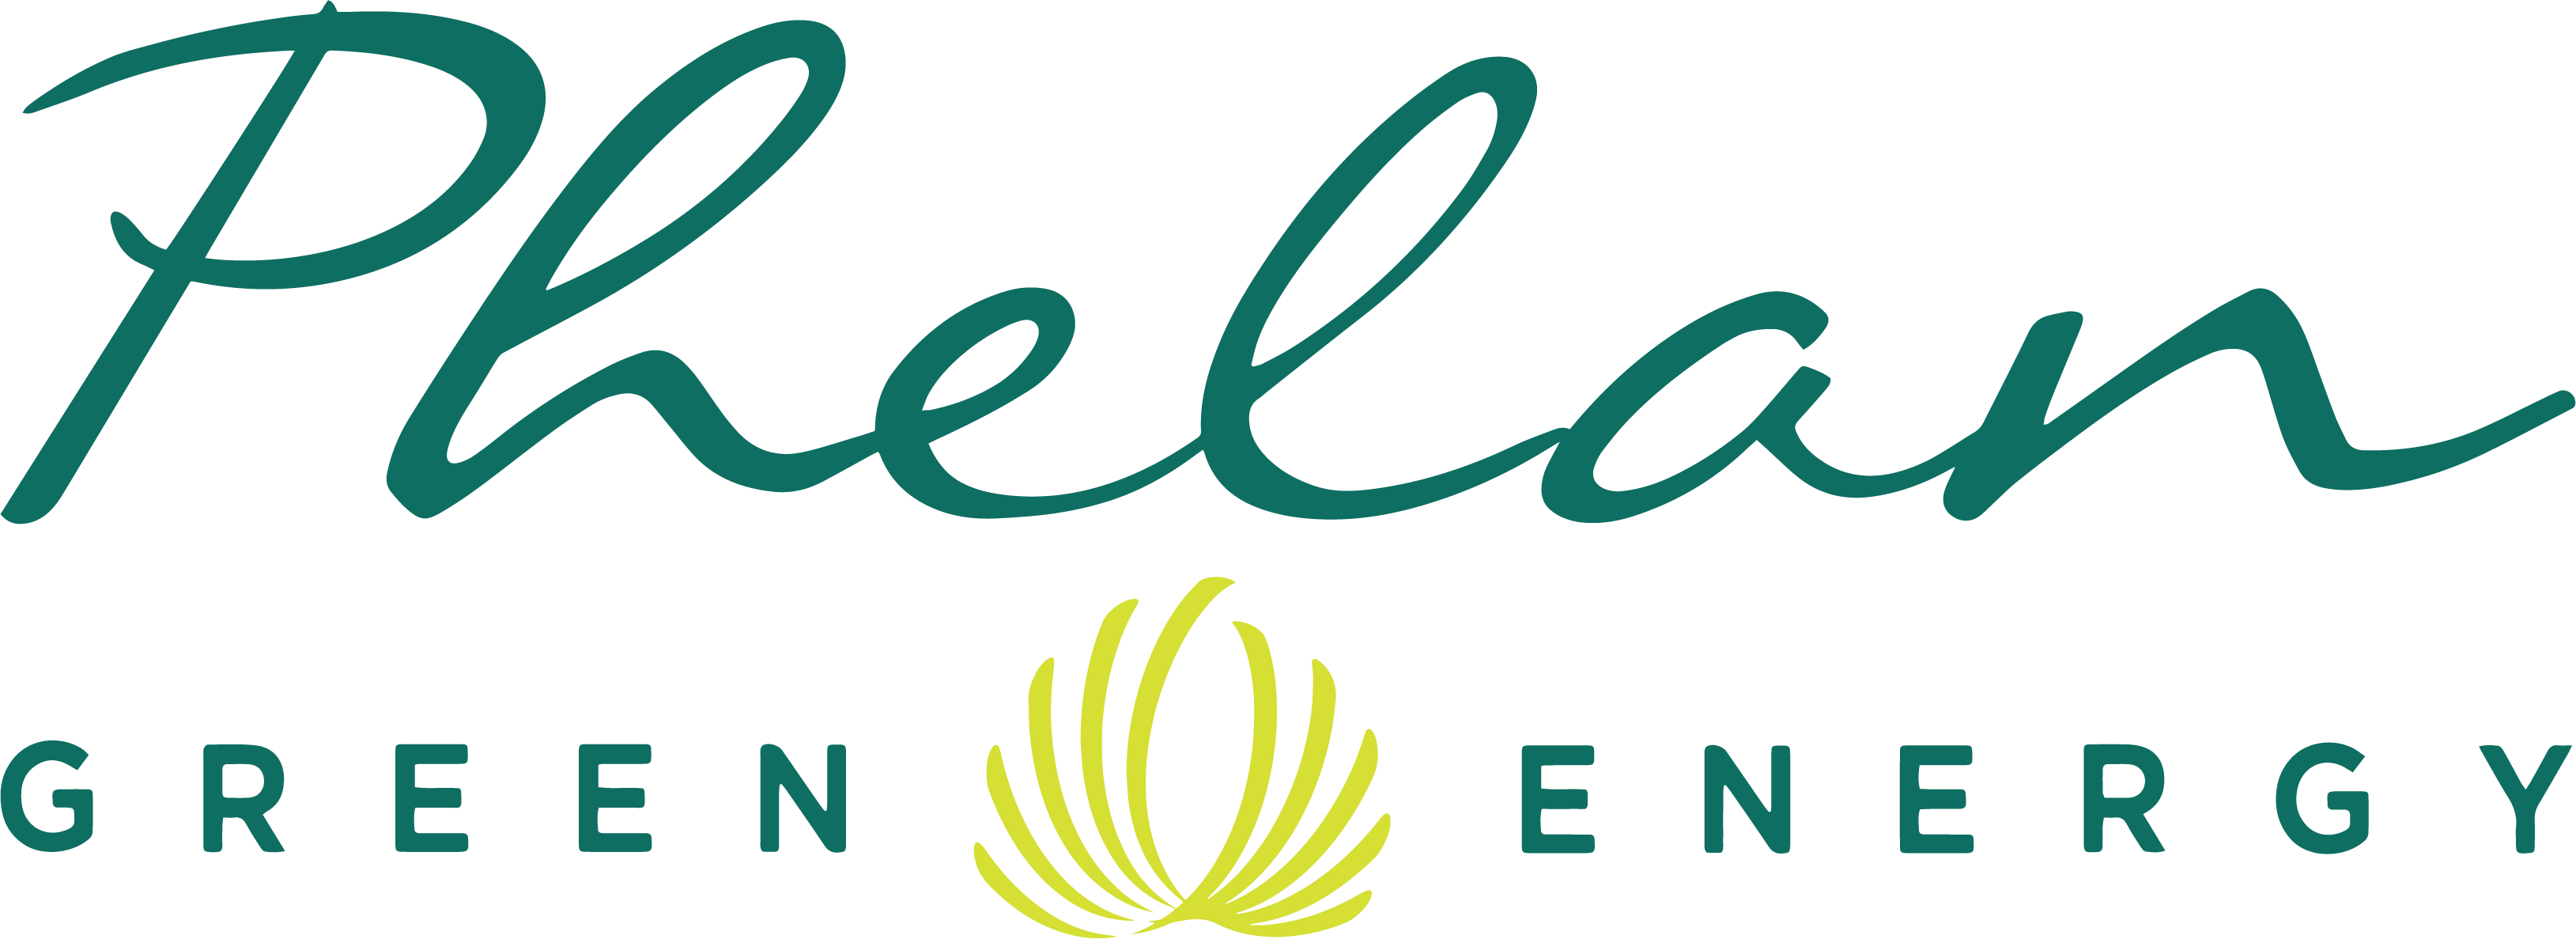 Phelan Energy Group Logo